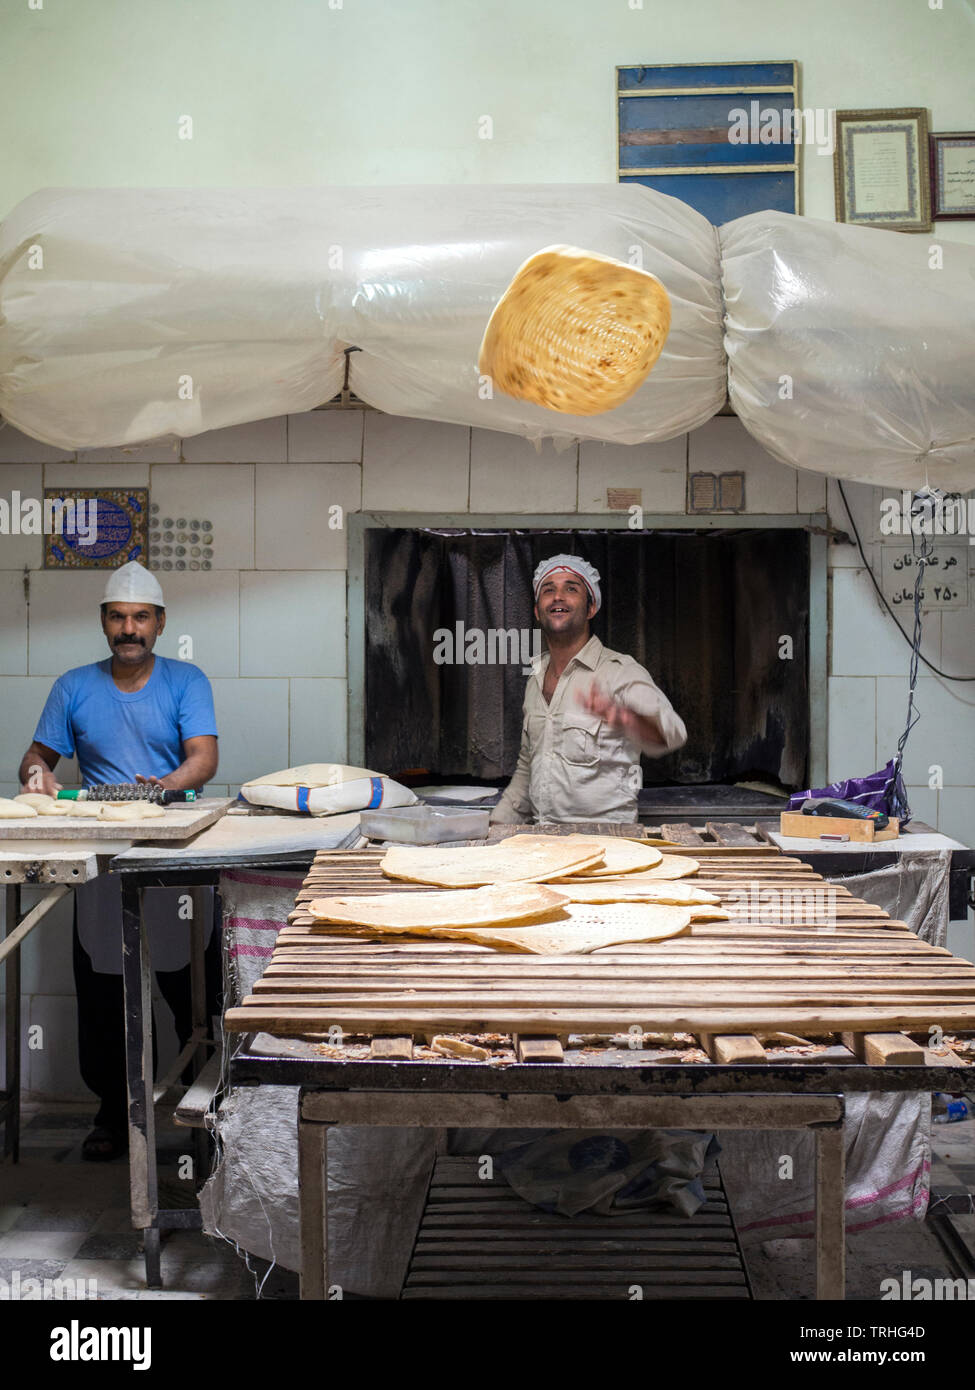 Ein Bäcker wirft eine Festplatte von Naan Brot in die Luft an seiner Bäckerei im Basar, oder Marktplatz, in Yazd, Iran Stockfoto